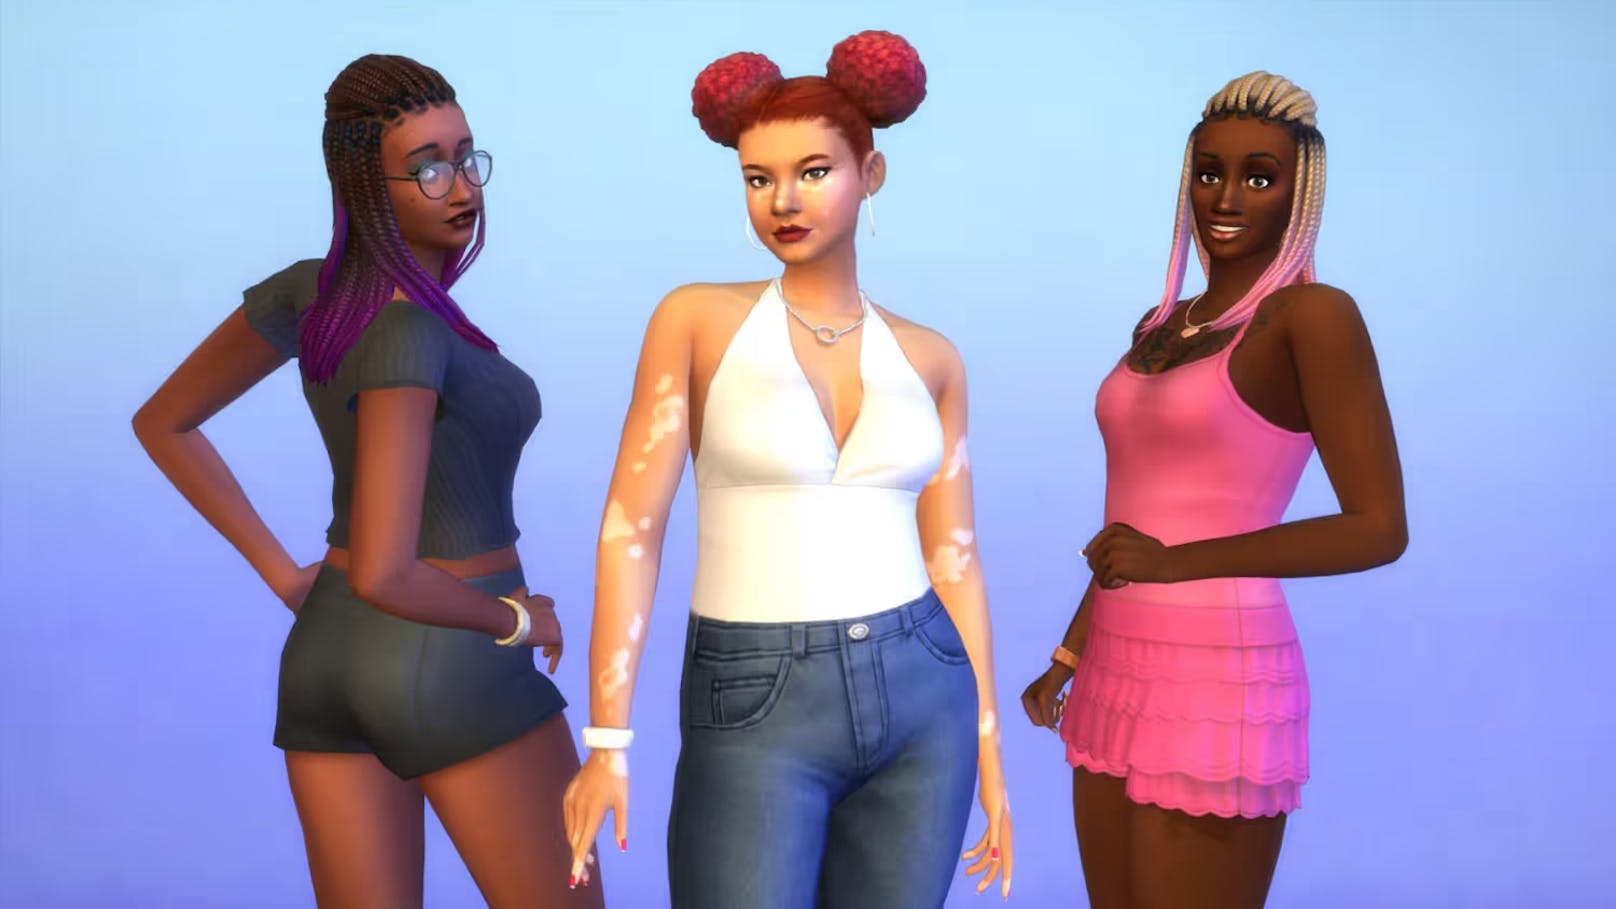 "Die Sims" kooperiert mit "Dark & Lovely" für mehr Vielfalt und Repräsentation in der Gaming-Welt.